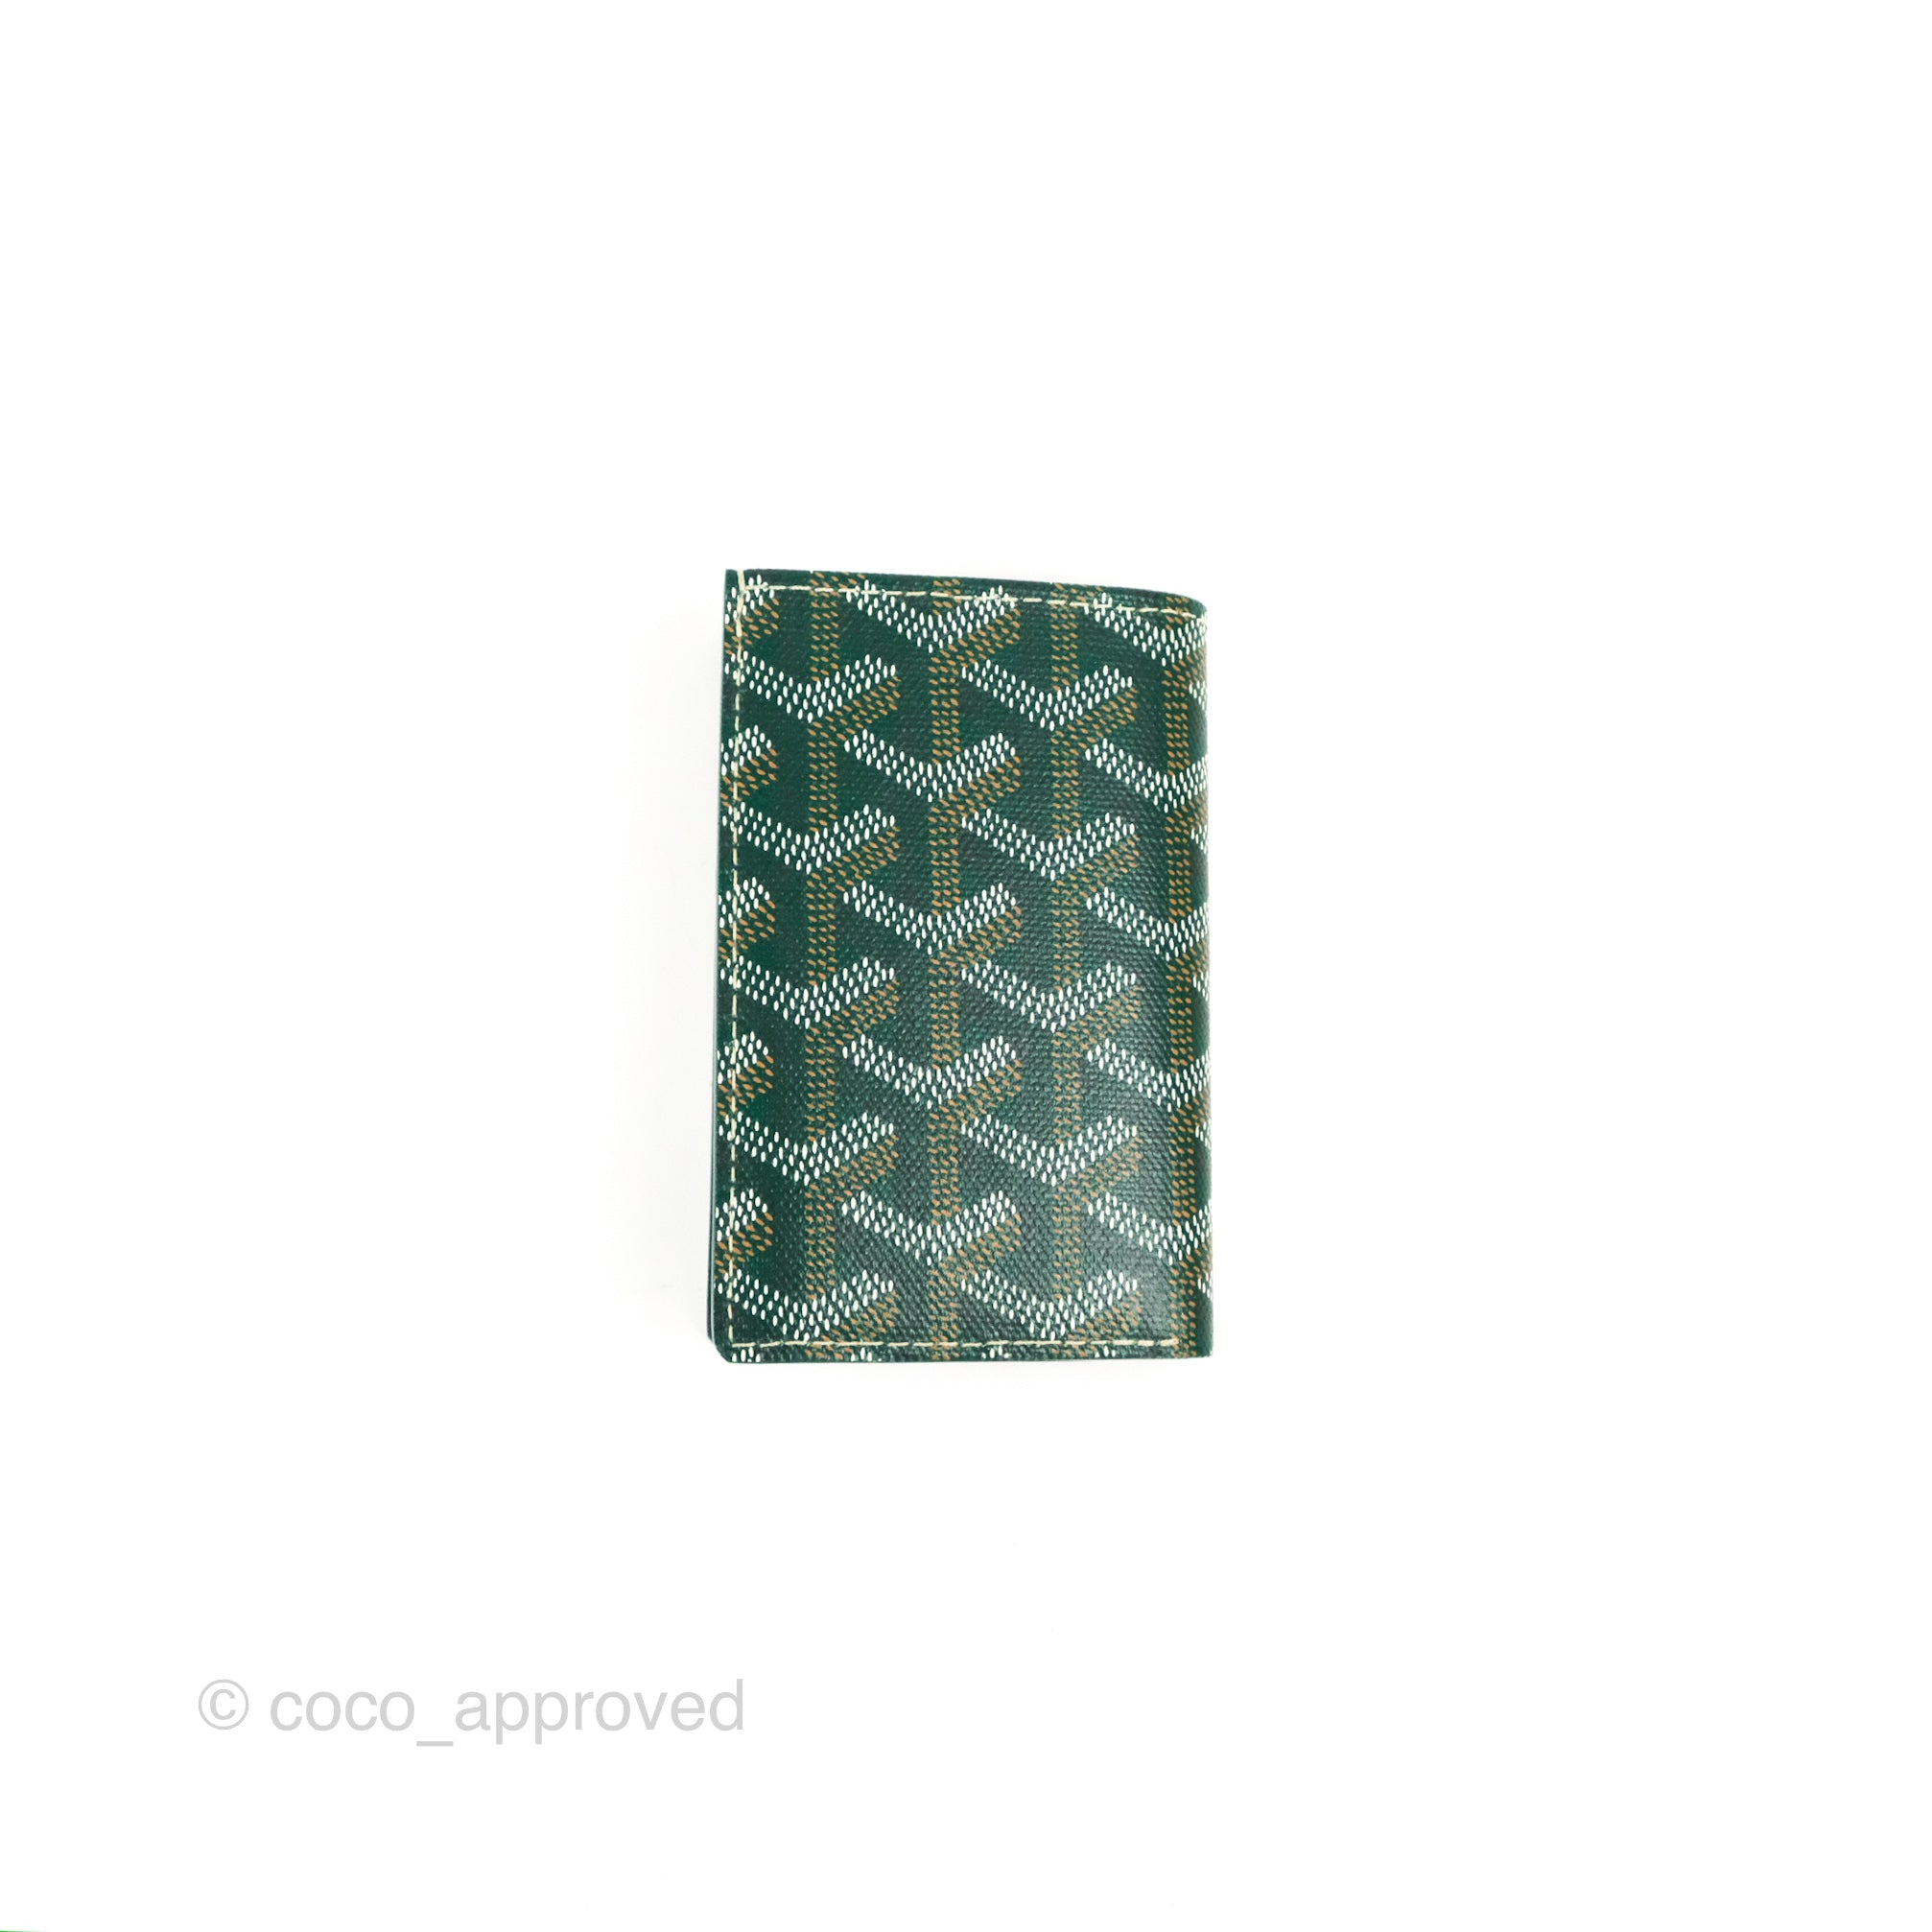 Cloth wallet Goyard Green in Cloth - 30392840